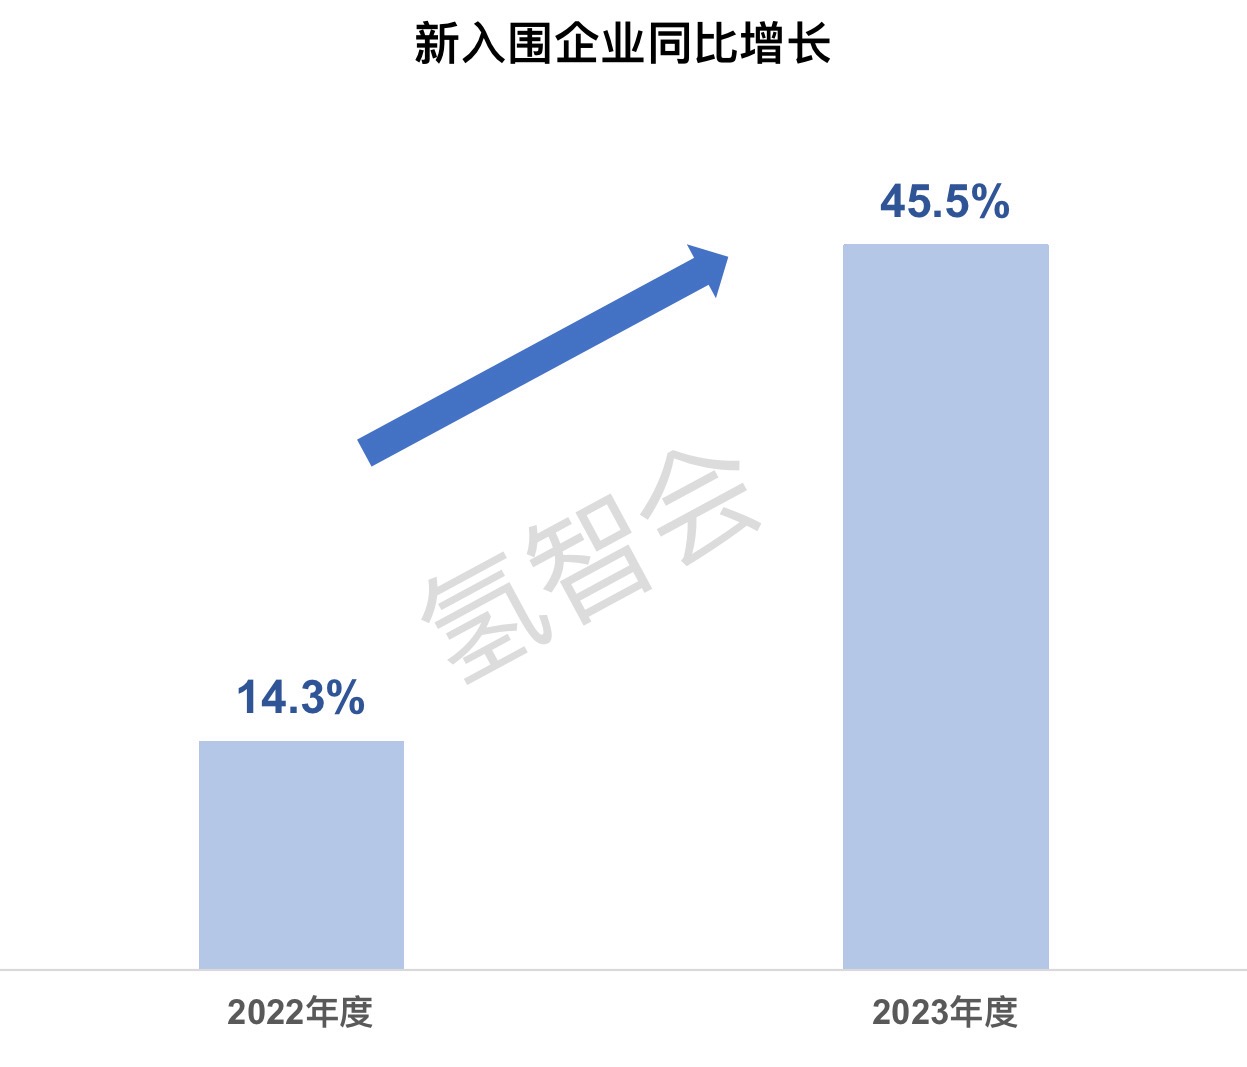 上海第三批示范应用解读：支持单位持续扩大，新增企业比例显著提升